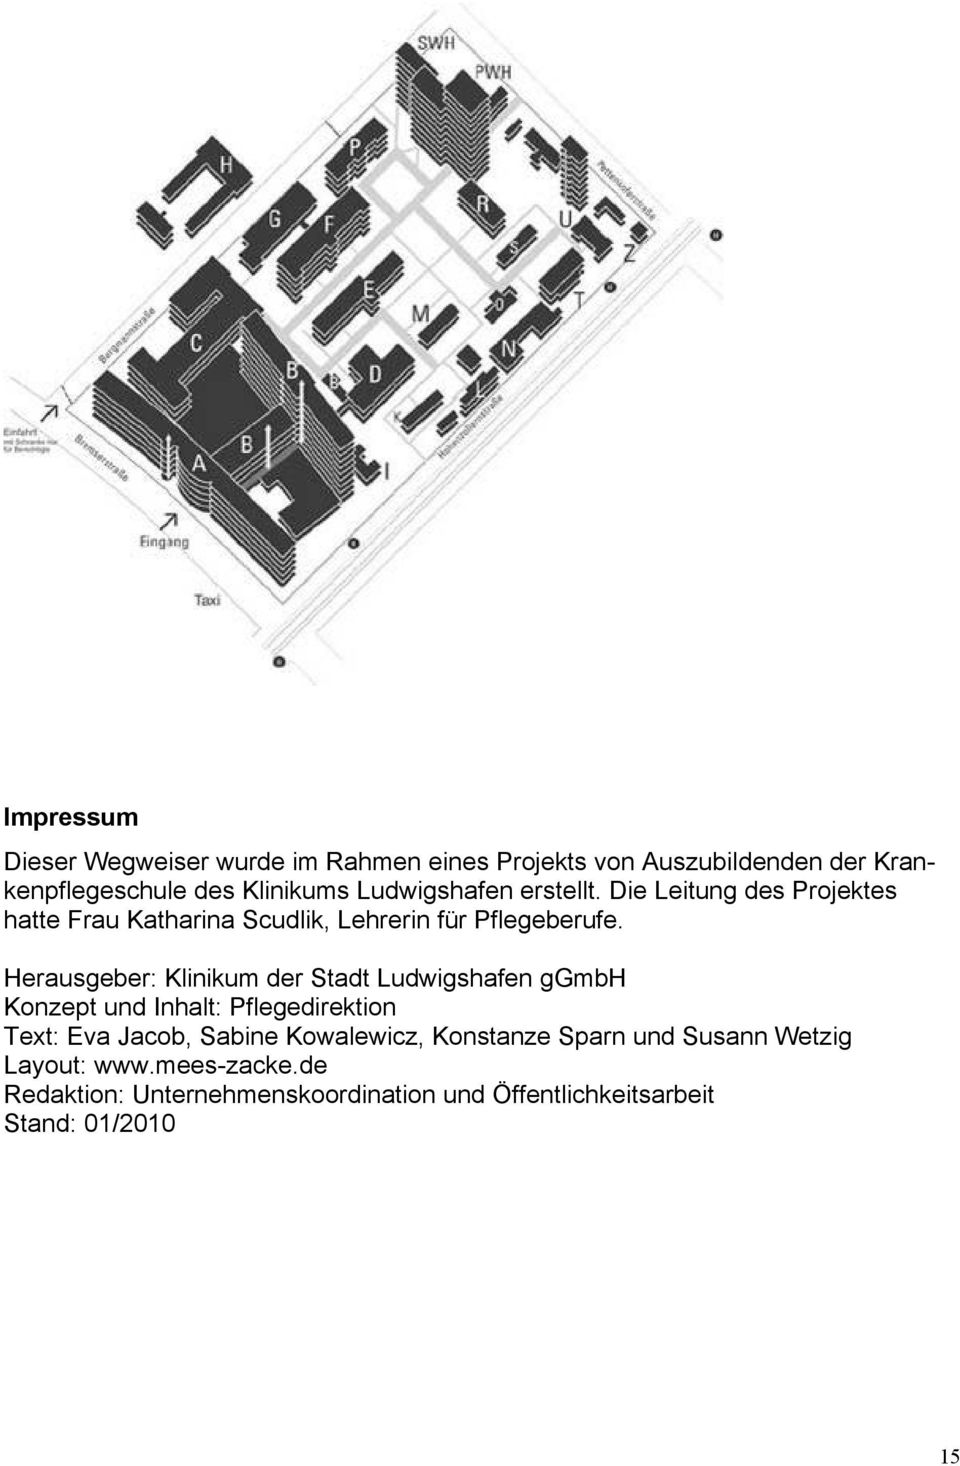 Herausgeber: Klinikum der Stadt Ludwigshafen ggmbh Konzept und Inhalt: Pflegedirektion Text: Eva Jacob, Sabine